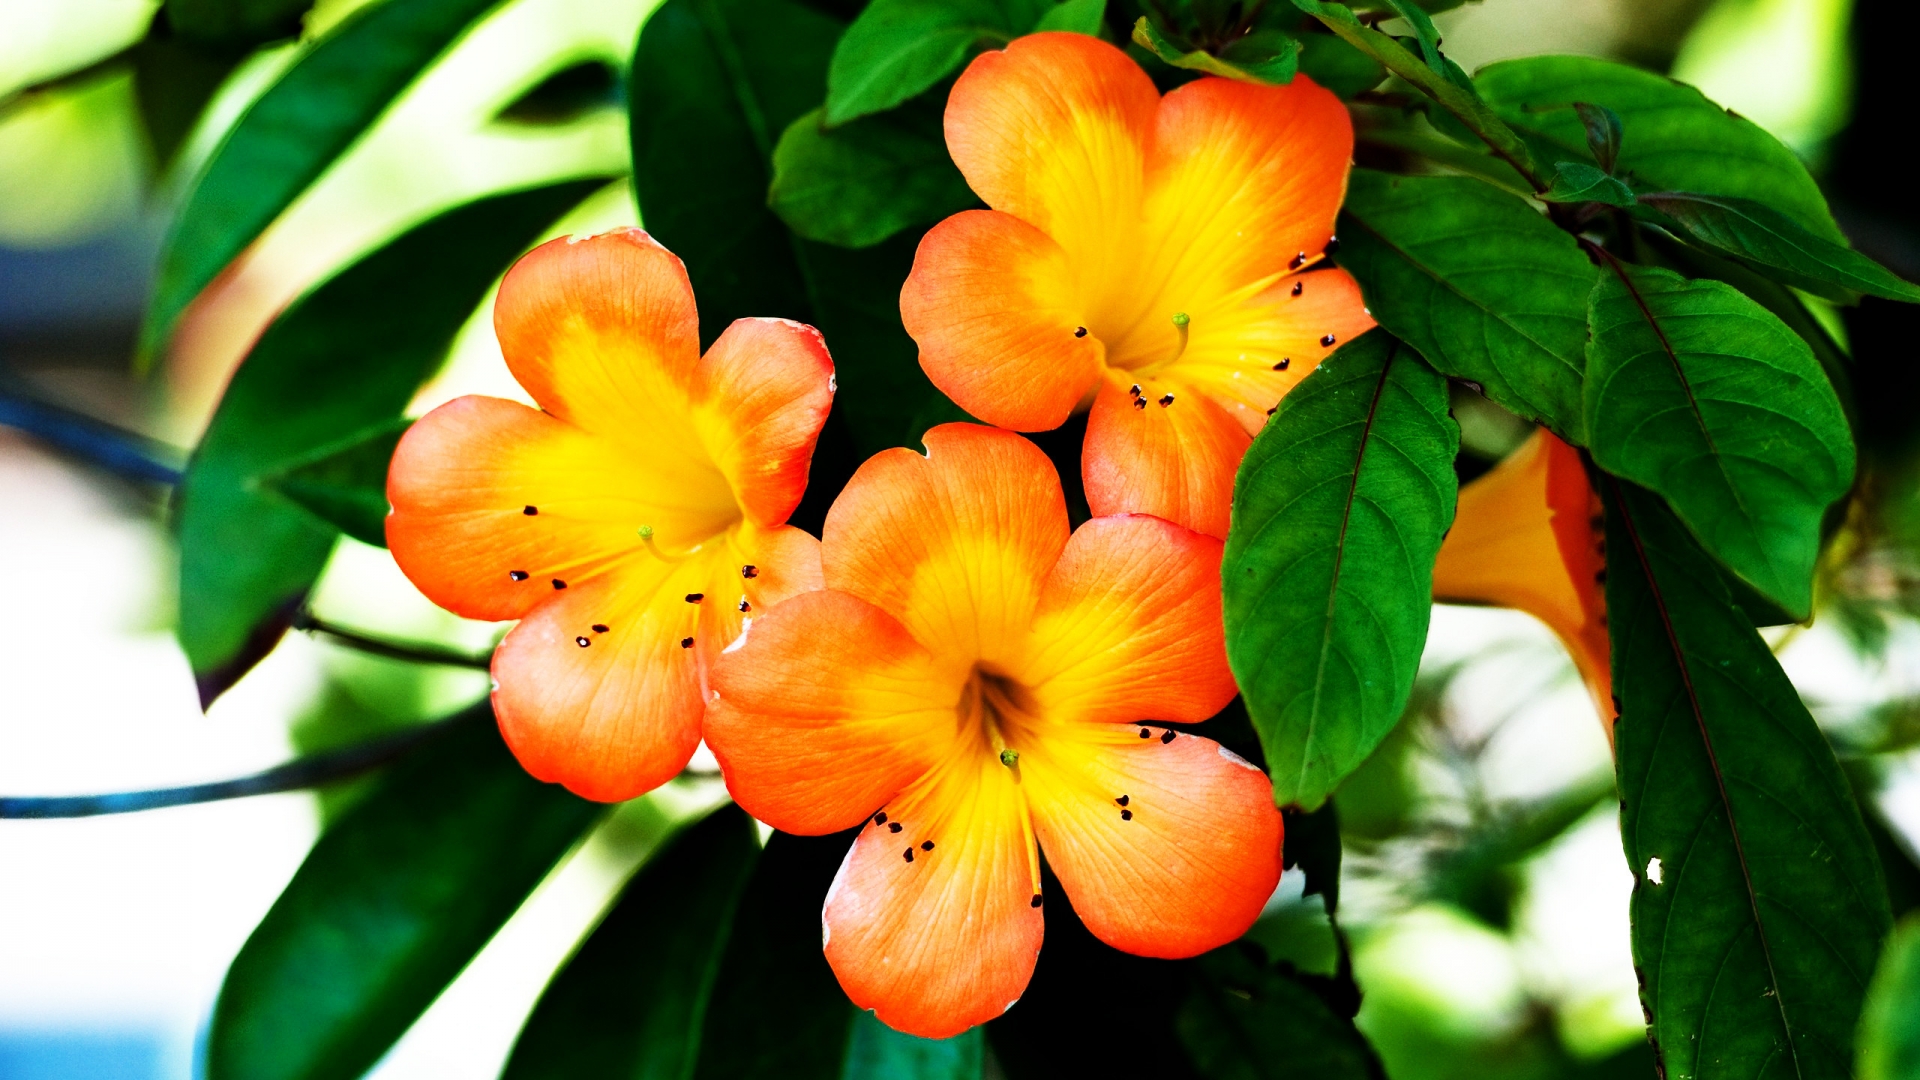 Spring Orange Flower for 1920 x 1080 HDTV 1080p resolution